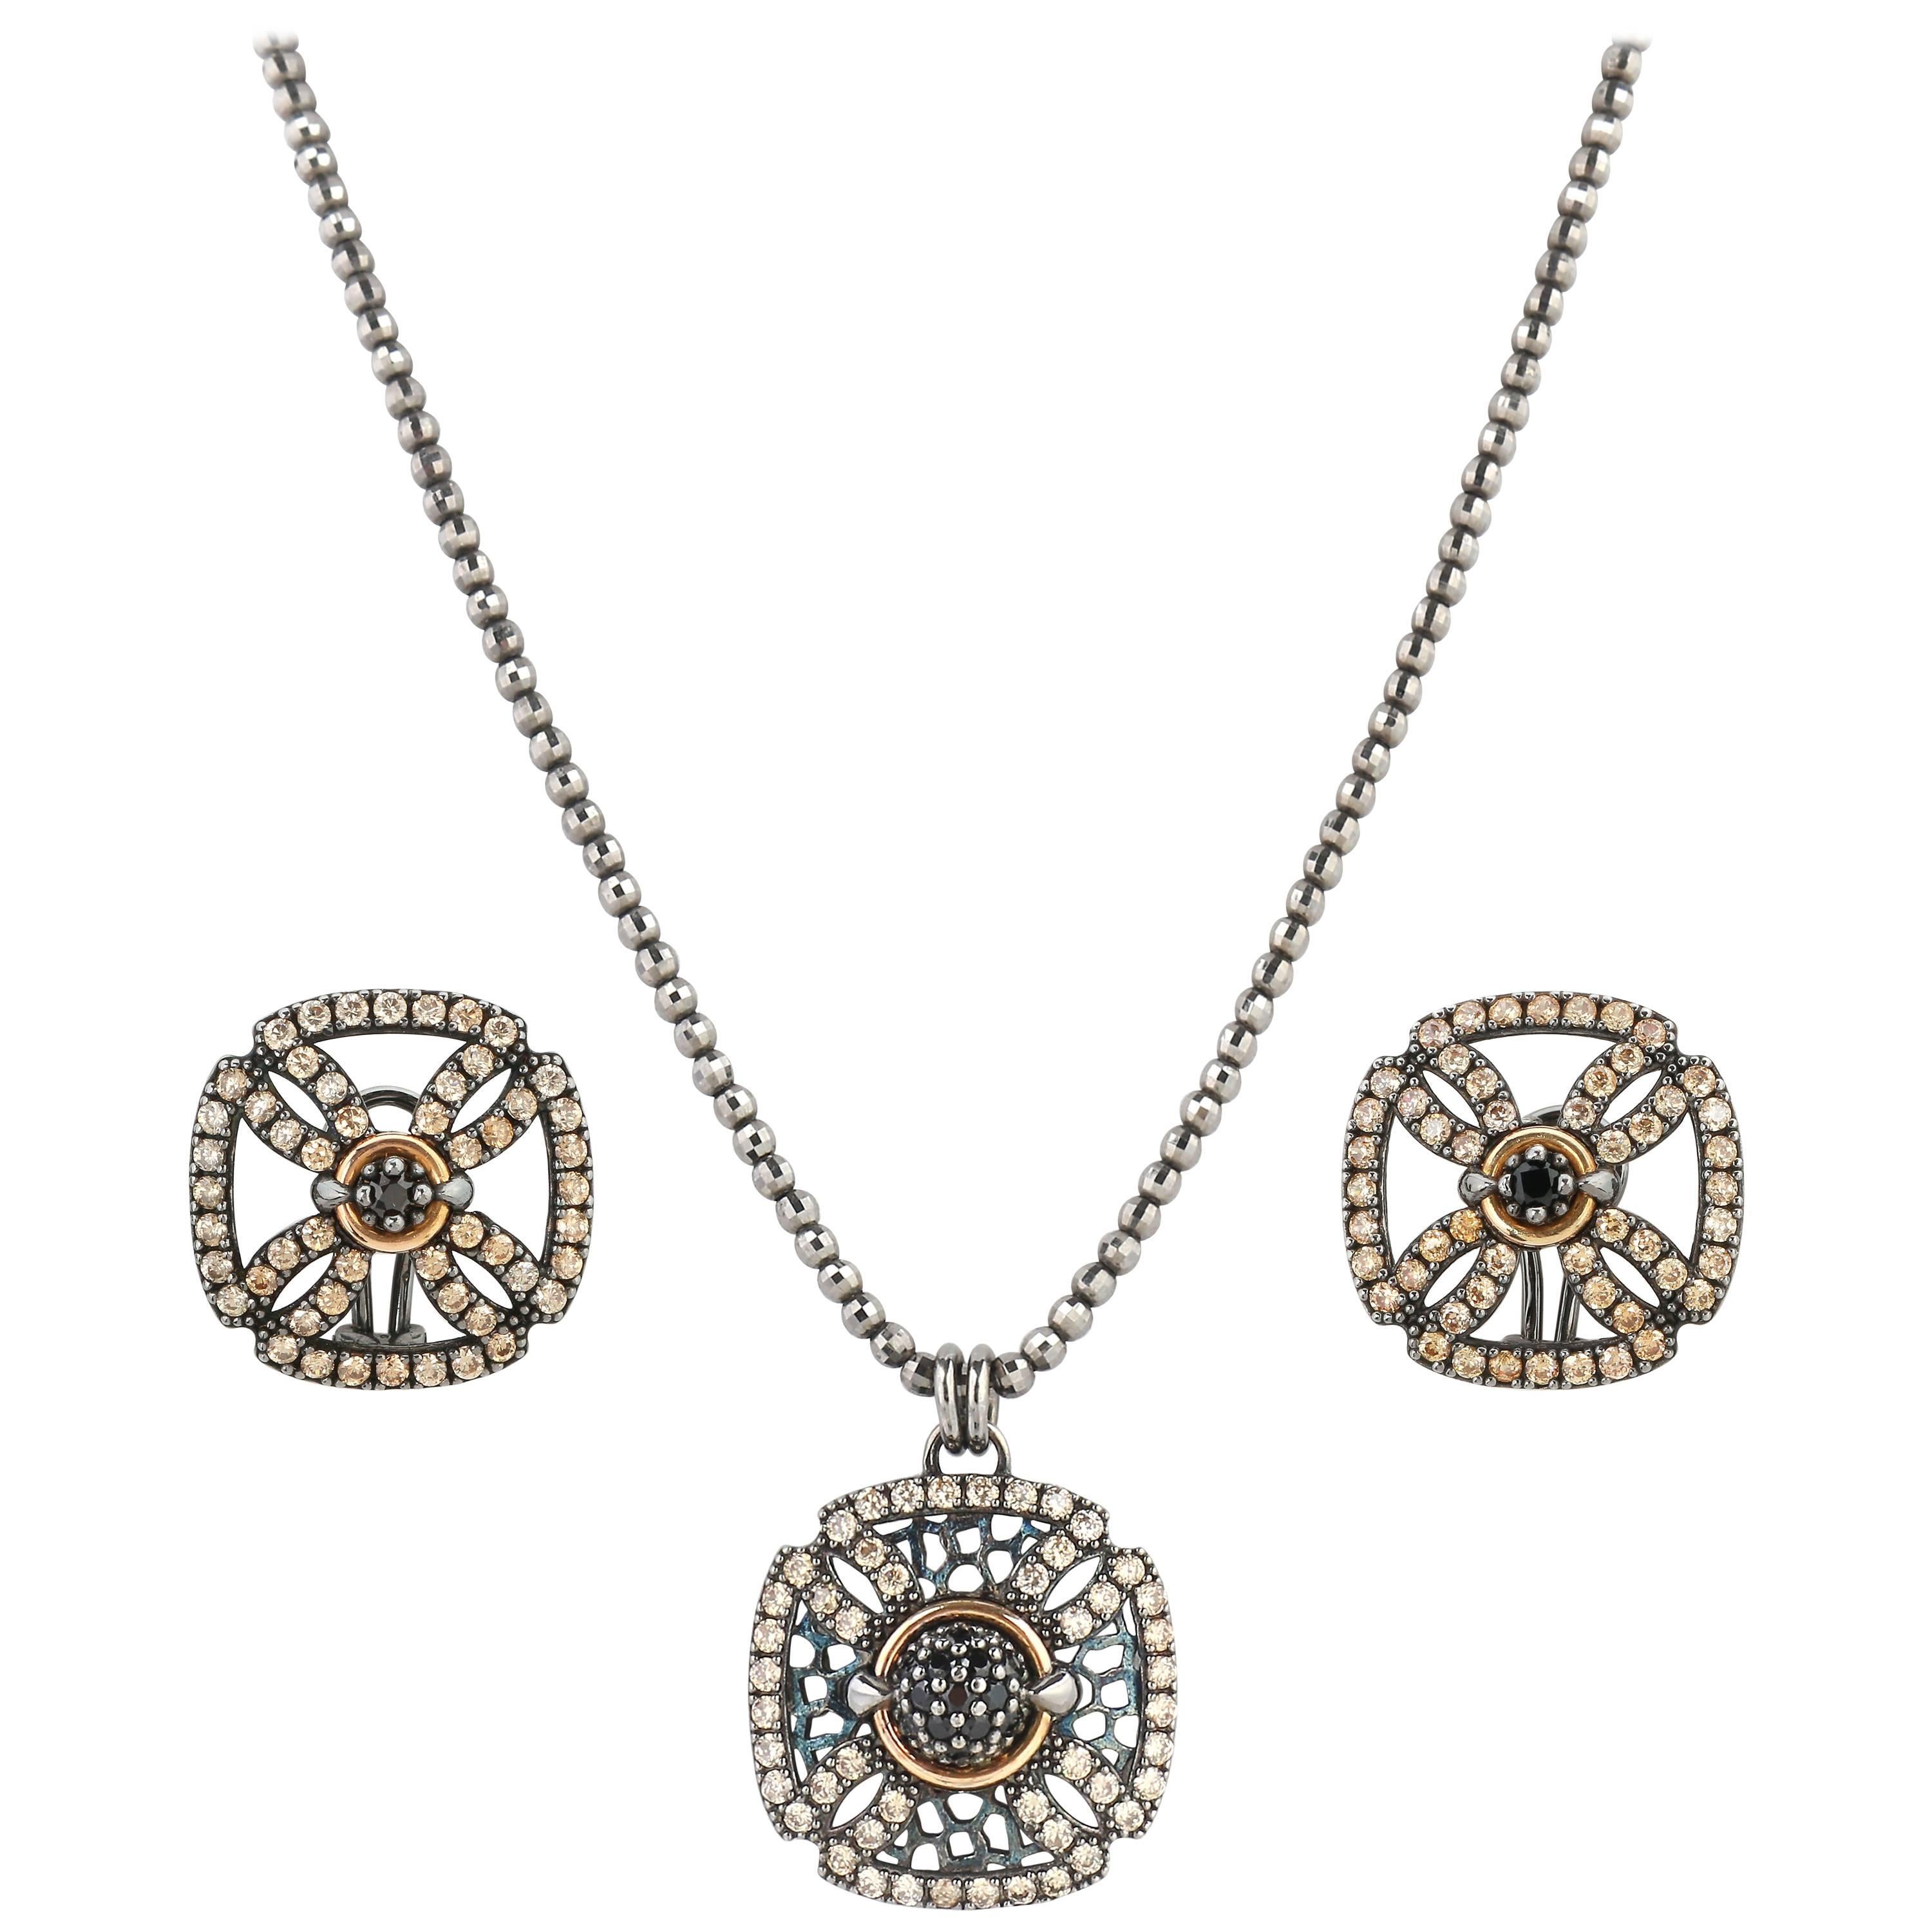 BOHEMME A/W 2012 "Croix" Diamond 18K Sterling Pendant Necklace Earring Parure For Sale